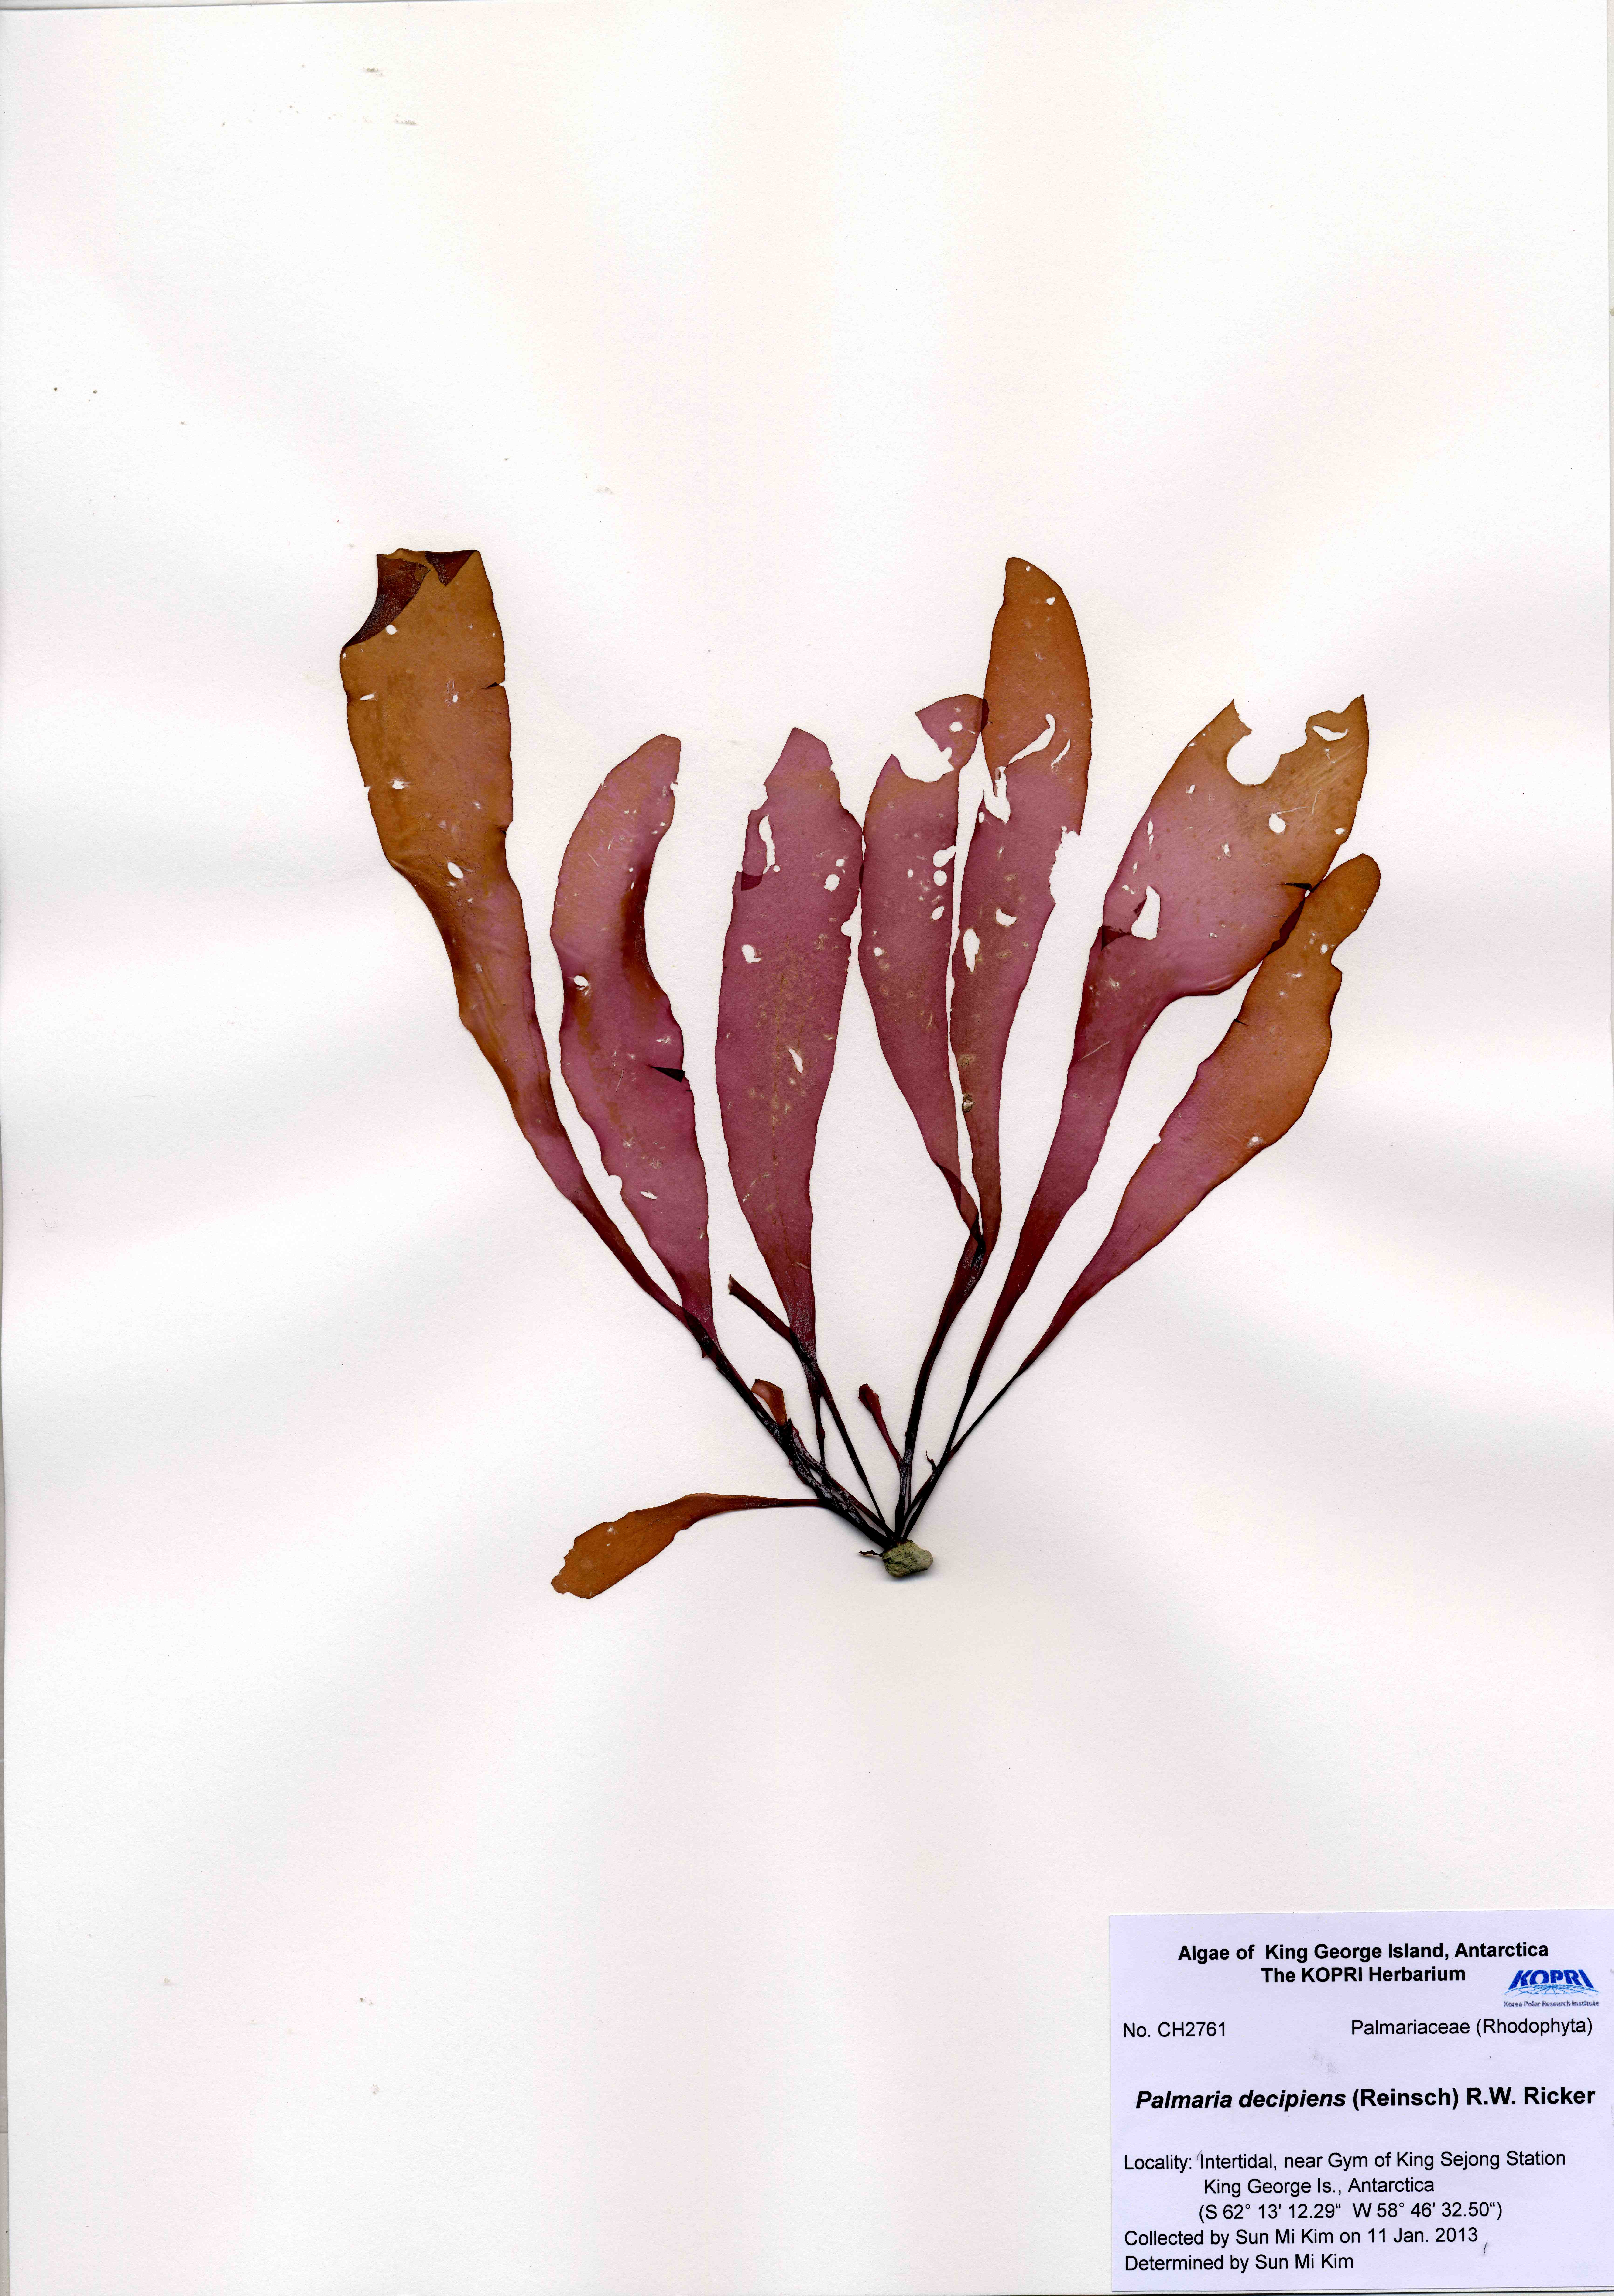 Palmaria decipiens (Reinsch) R.W.Ricker